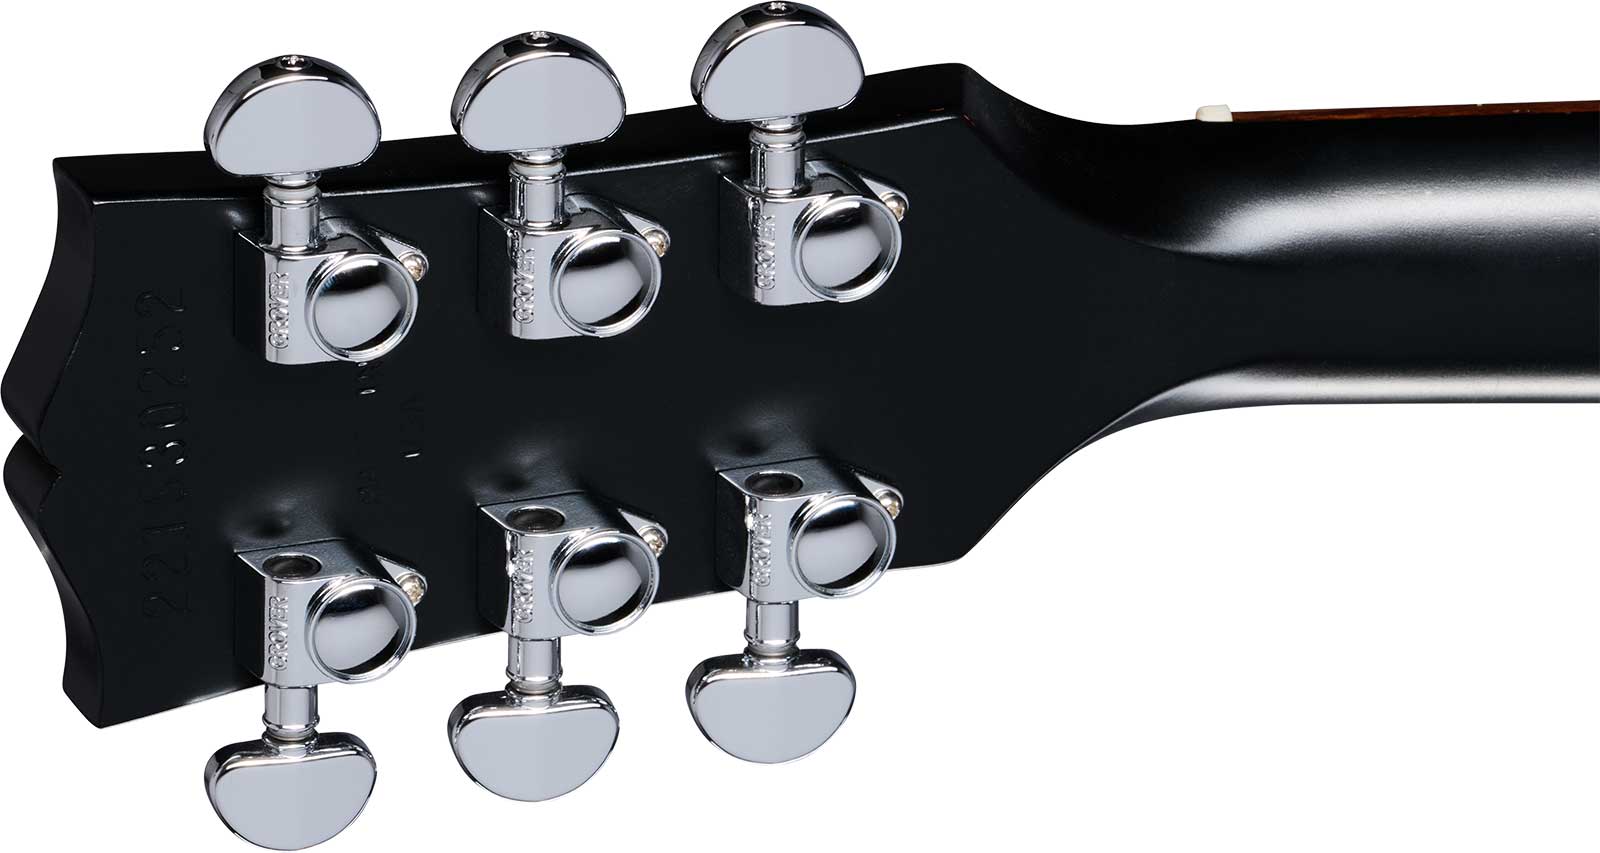 Gibson Charlie Starr Les Paul Junior Ltd Signature 1p90 Ht Rw - Ebony Satin - Enkel gesneden elektrische gitaar - Variation 3